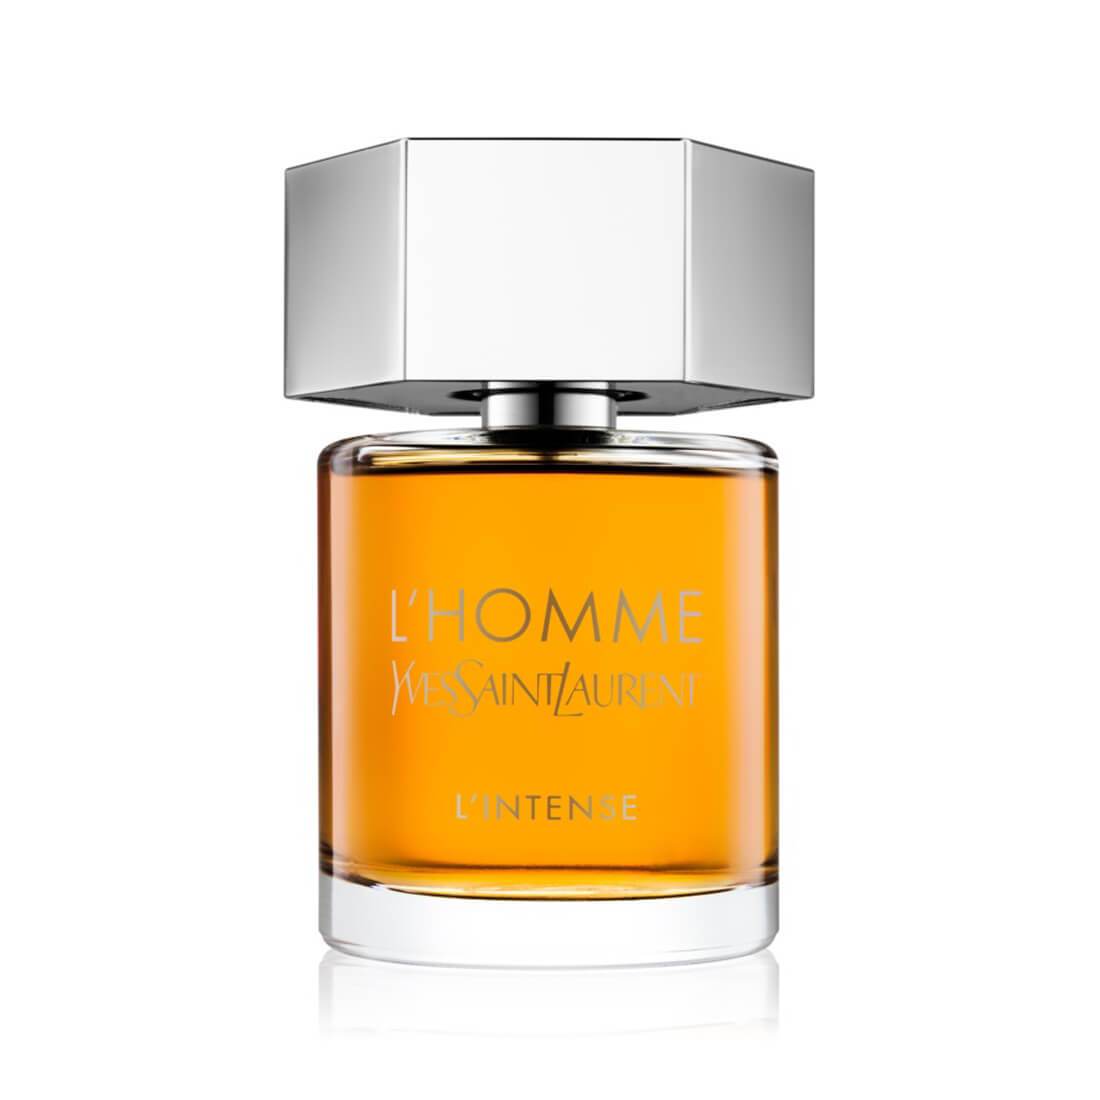 L'Homme Intense by Yves Saint Laurent for Men 100ml EDP Perfume